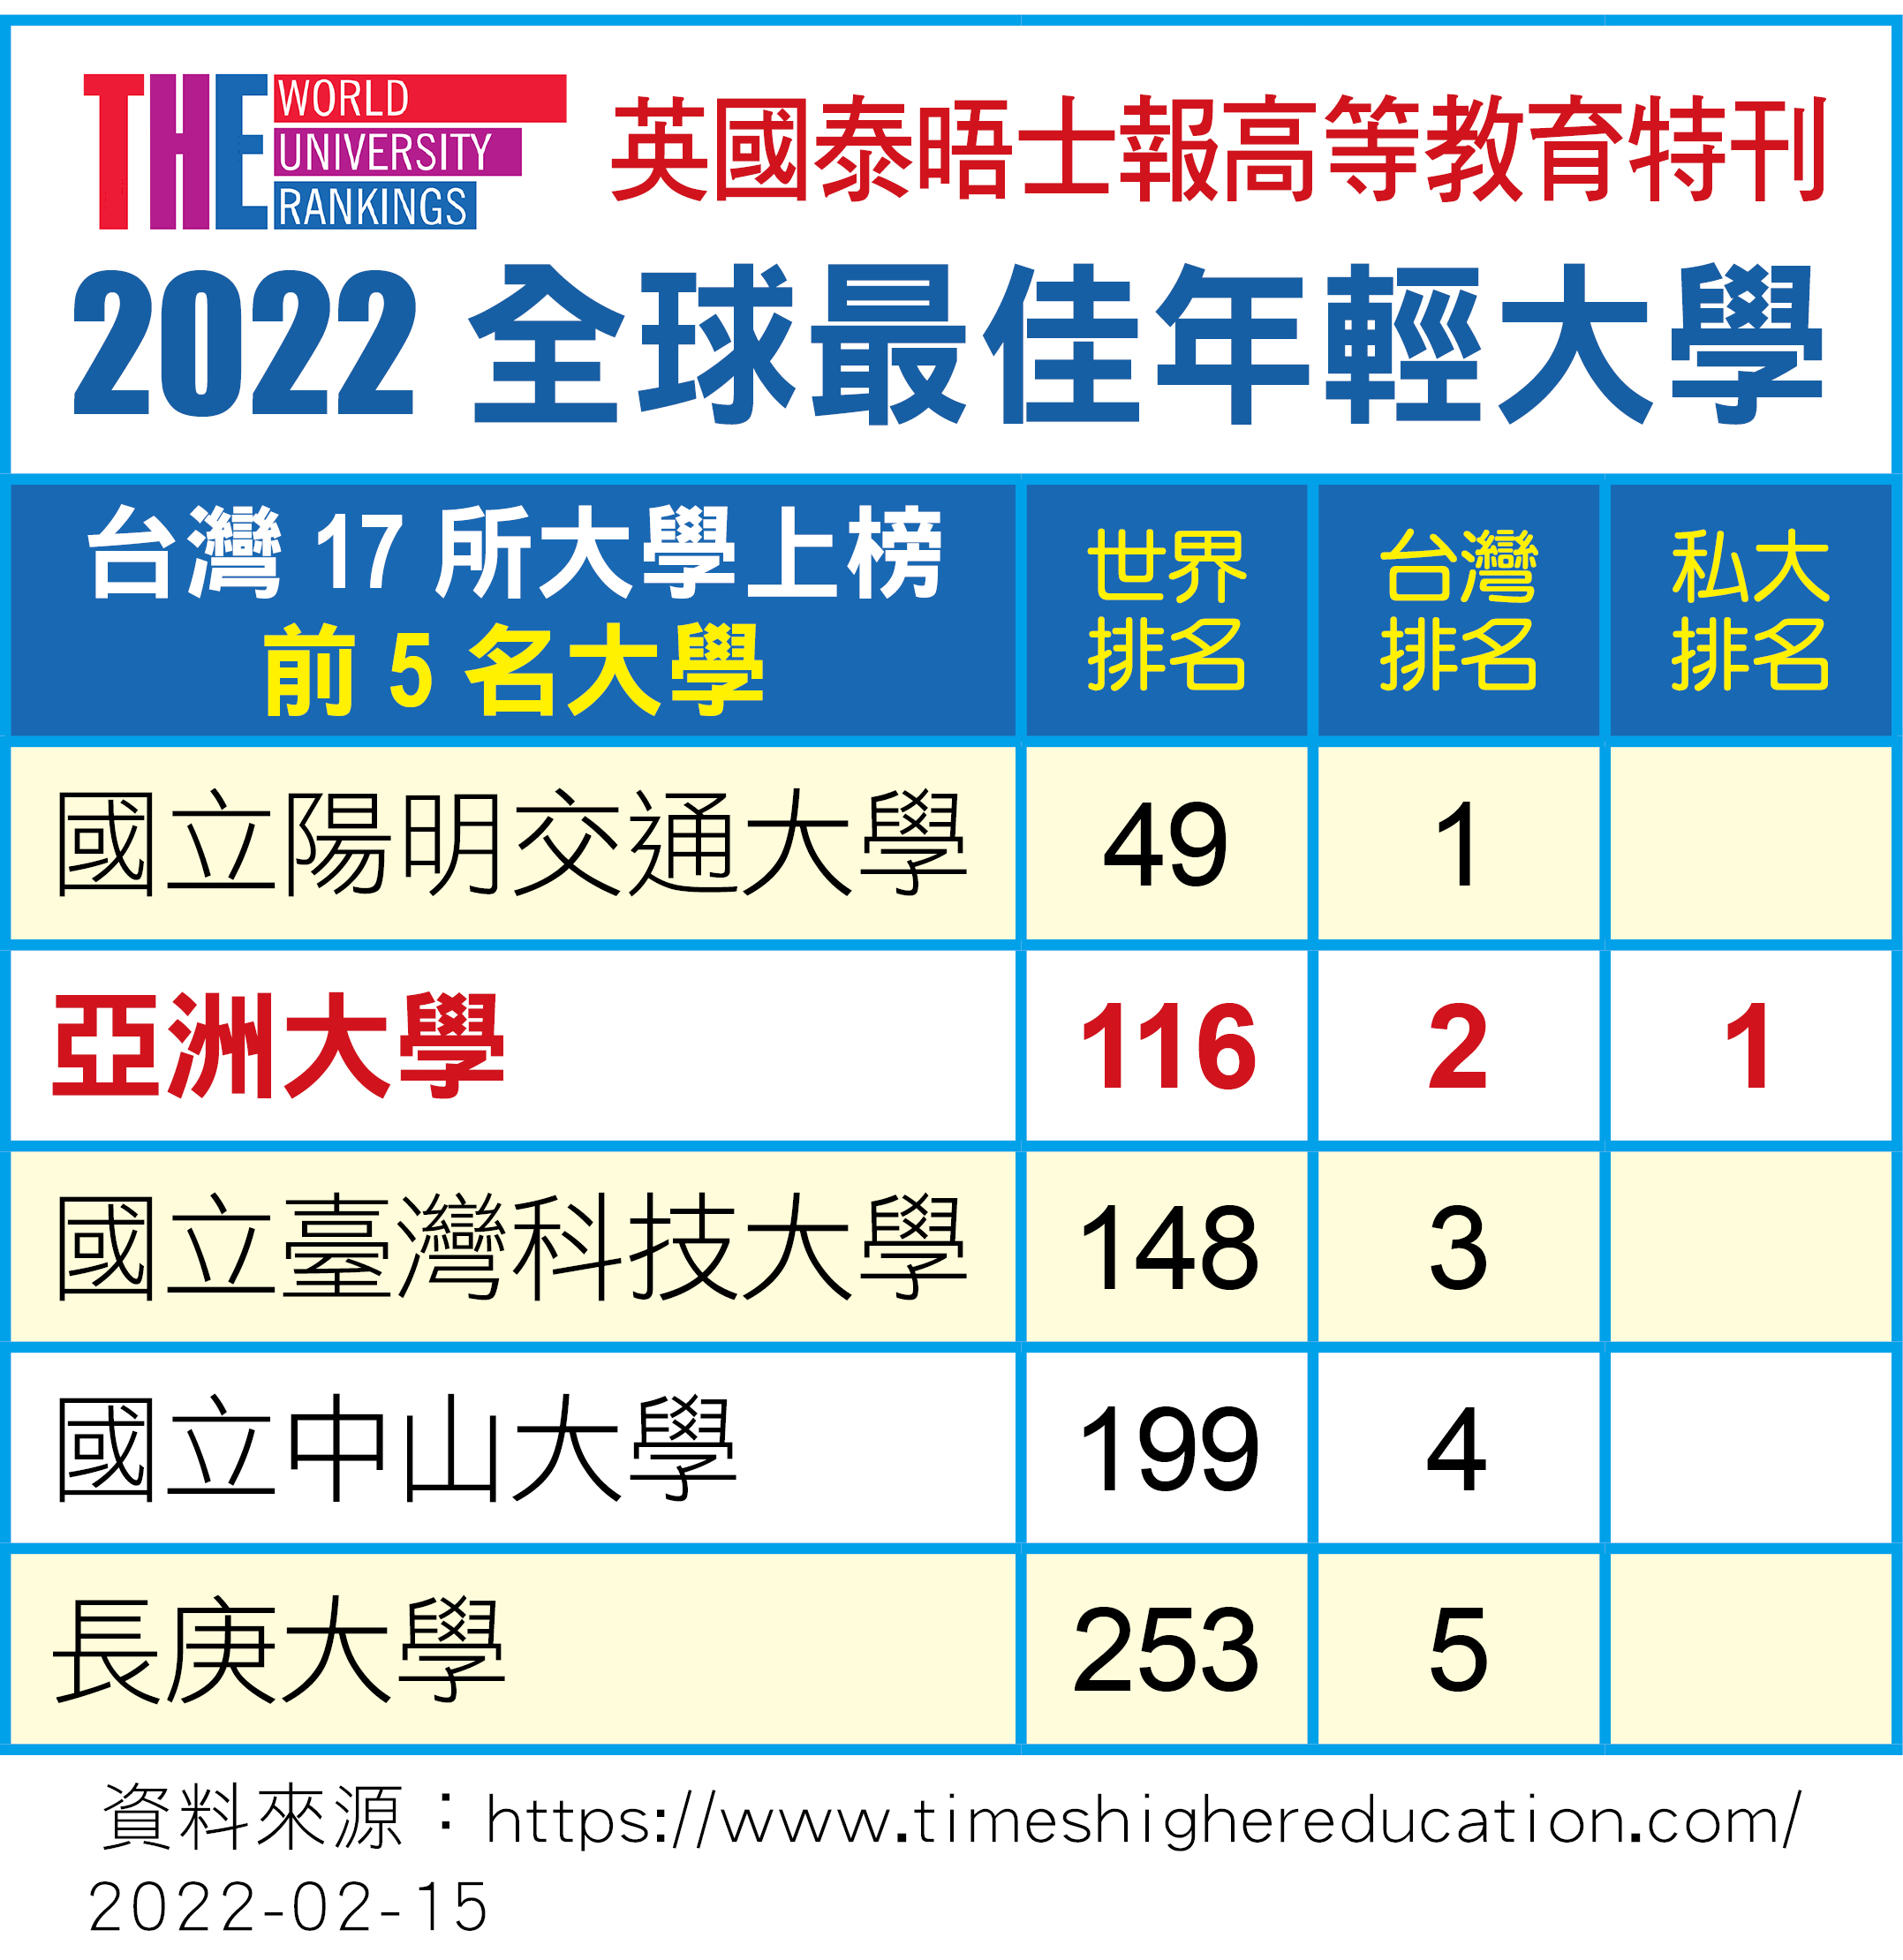 英國泰晤士報高教特刊「2022世界最佳年輕大學排行」，亞洲大學世界排名第116名，亞大名列全台第2名，私立大學第1名